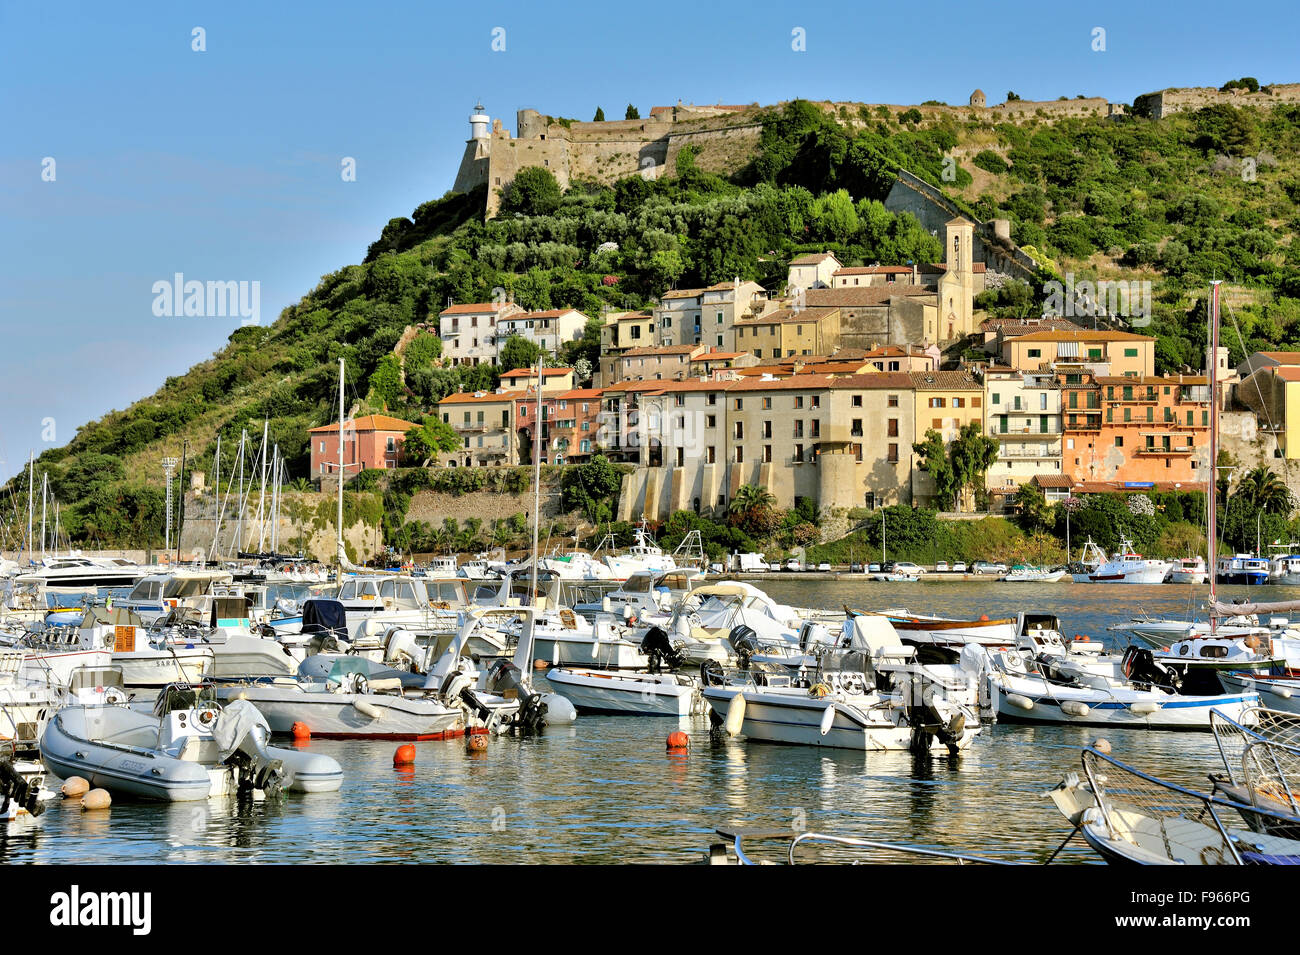 Port` Ercole, Coast town of Maremma in Tuscany, Italy Stock Photo